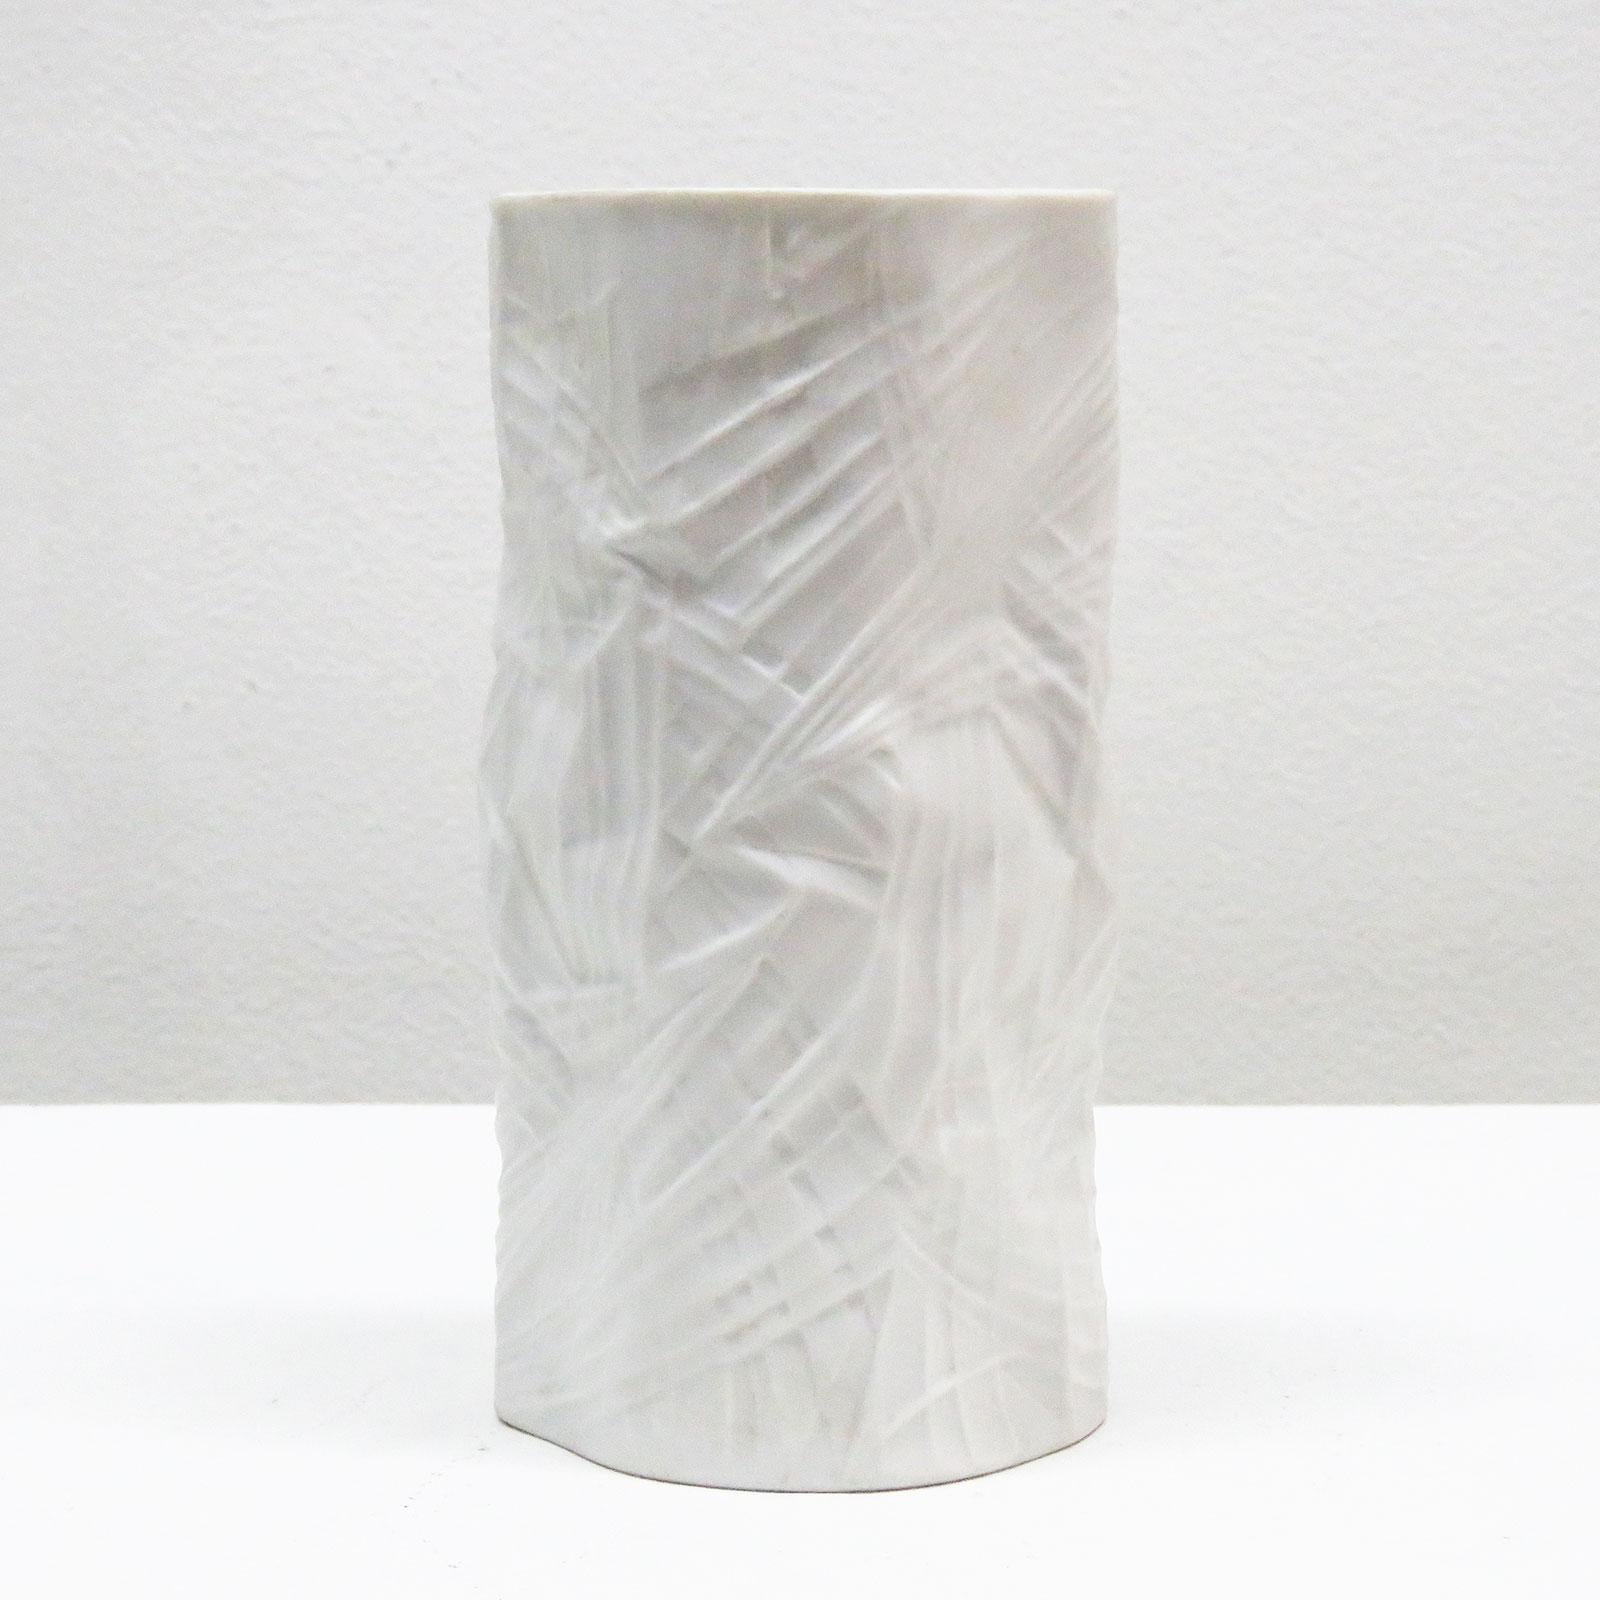 Merveilleux vase organique en porcelaine mate No. 2991 par Martin Freyer pour Rosenthal Studioline, Allemagne, avec un aspect de motif textile enveloppé et un intérieur émaillé, marqué.